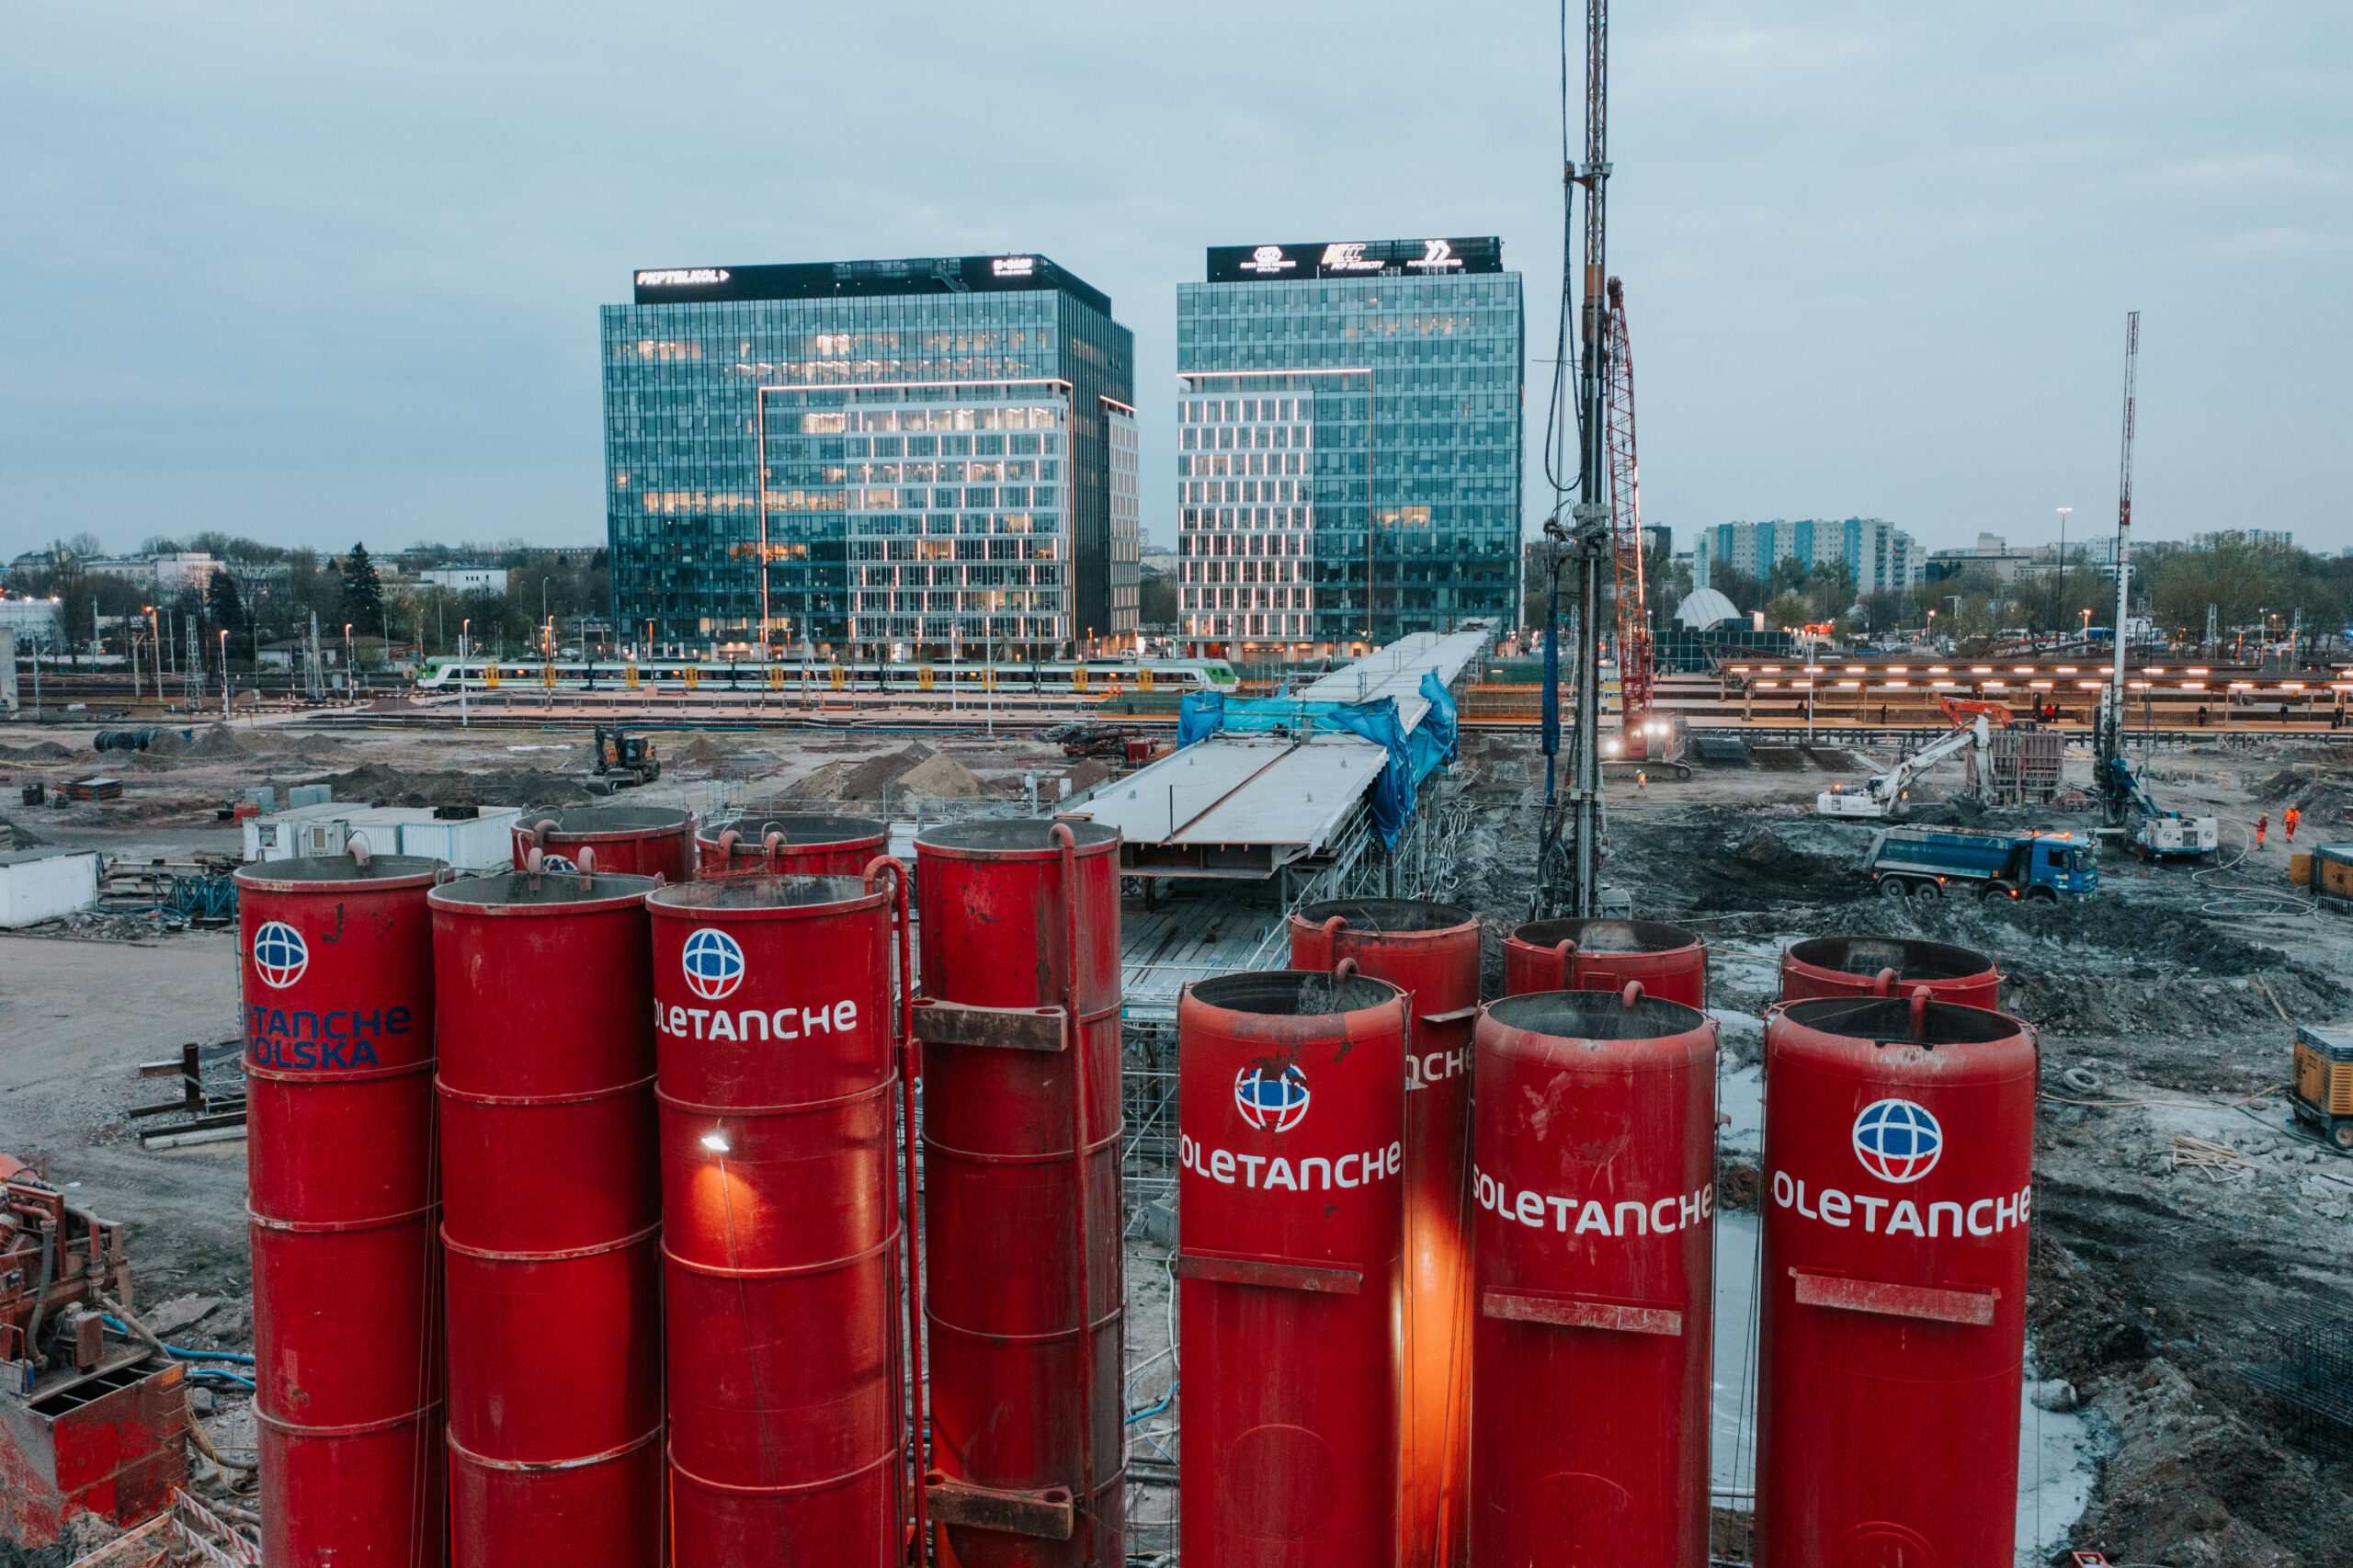 Przebudowa stacji Warszawa Zachodnia – Soletanche podsumowuje 7 miesięcy pracy